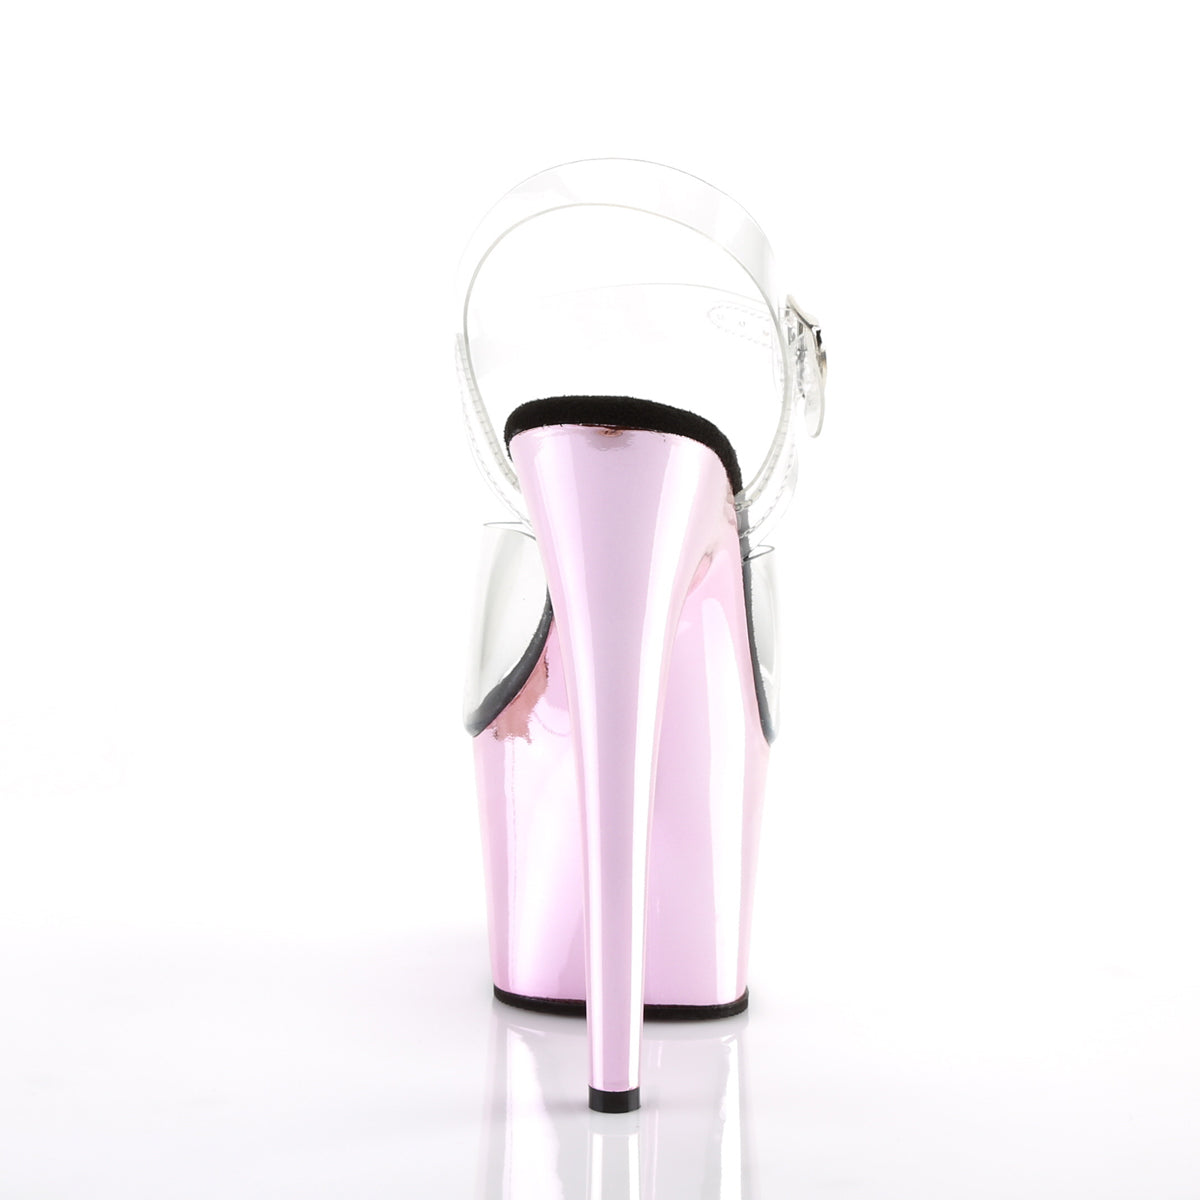 ADORE-708 Baby Pink Metallic Platform Heels